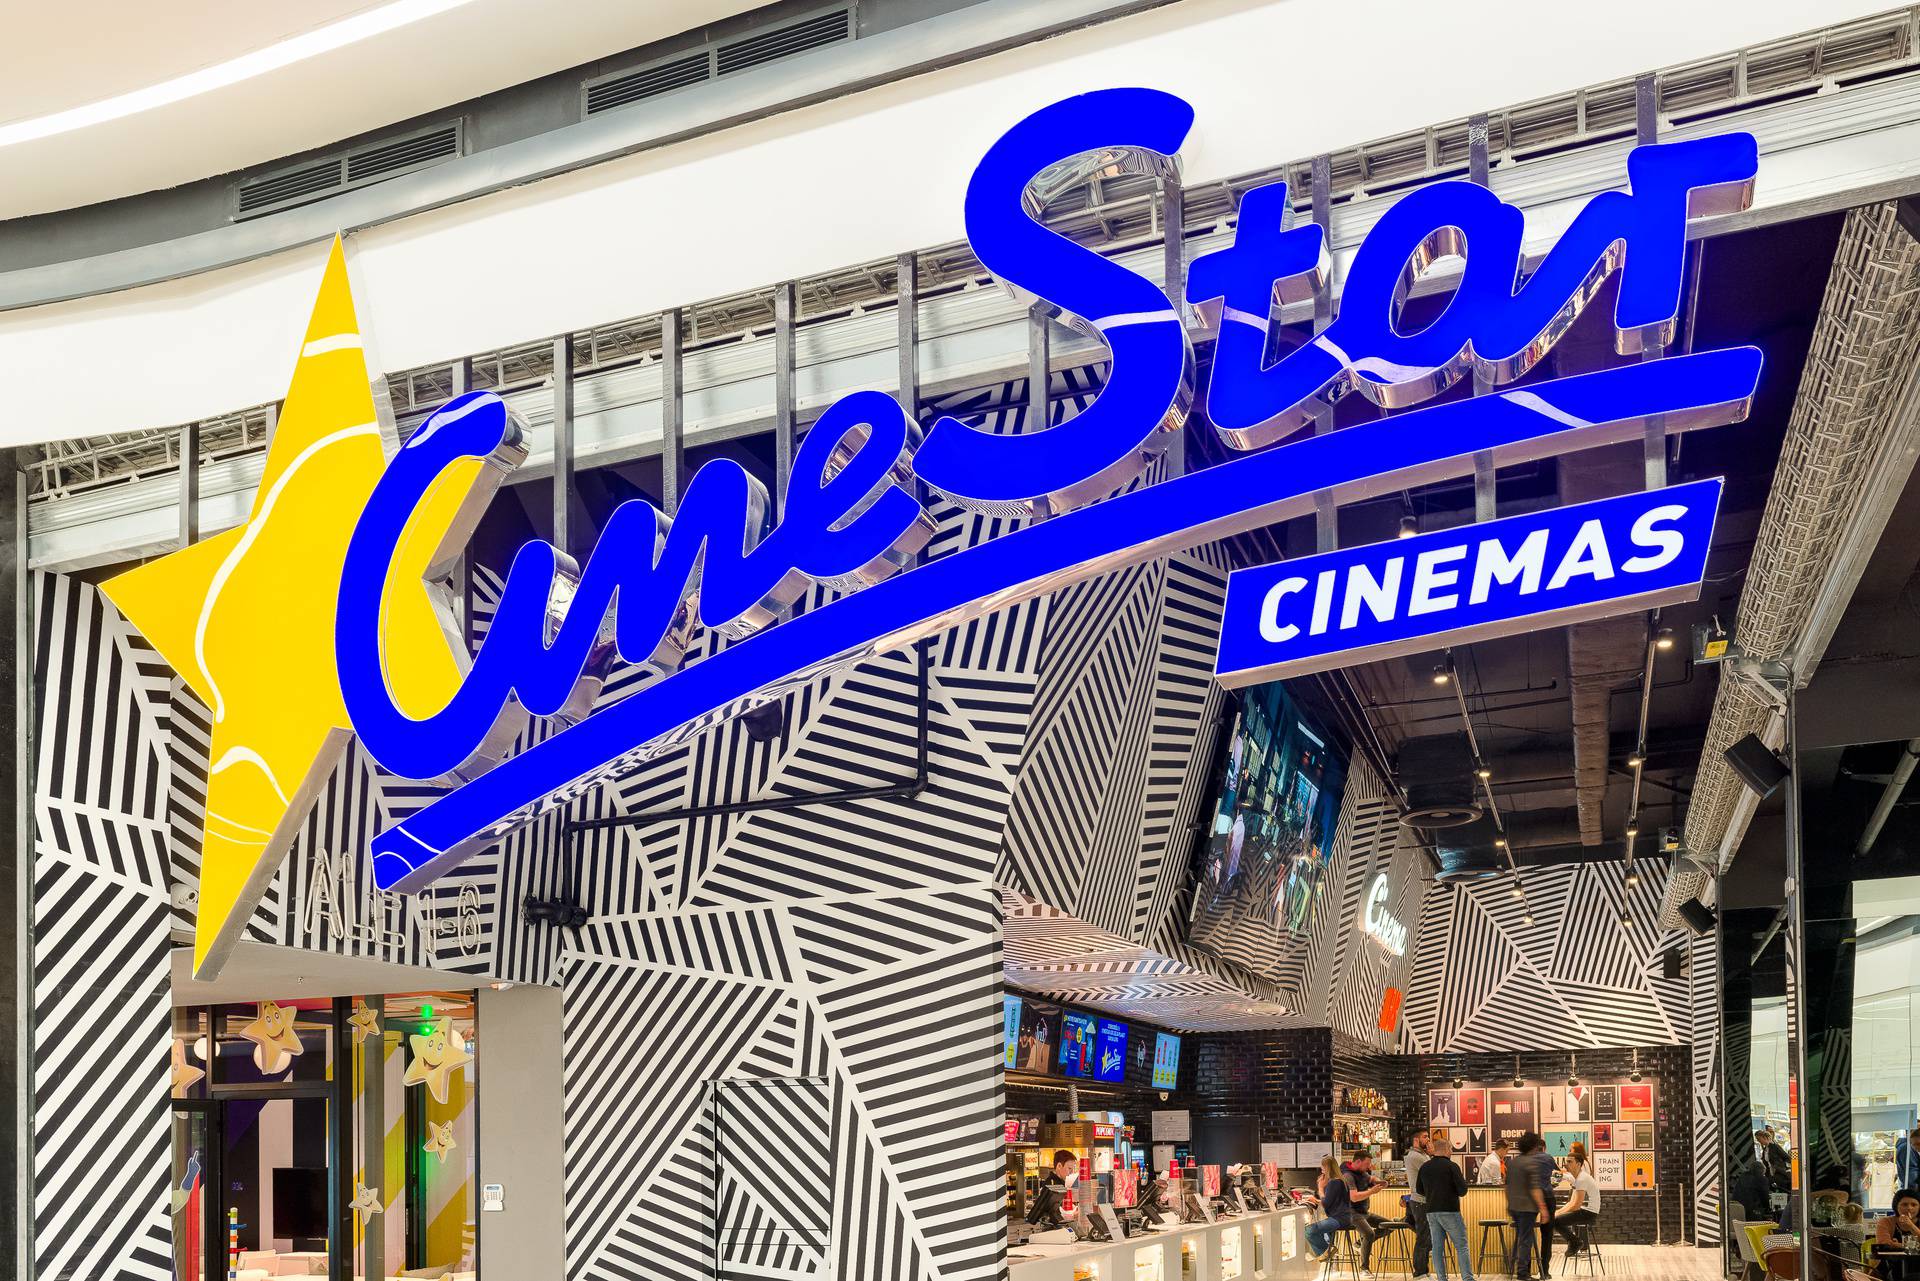 CineStar Cinemas uskoro otvara kino nove generacije u Sarajevu!